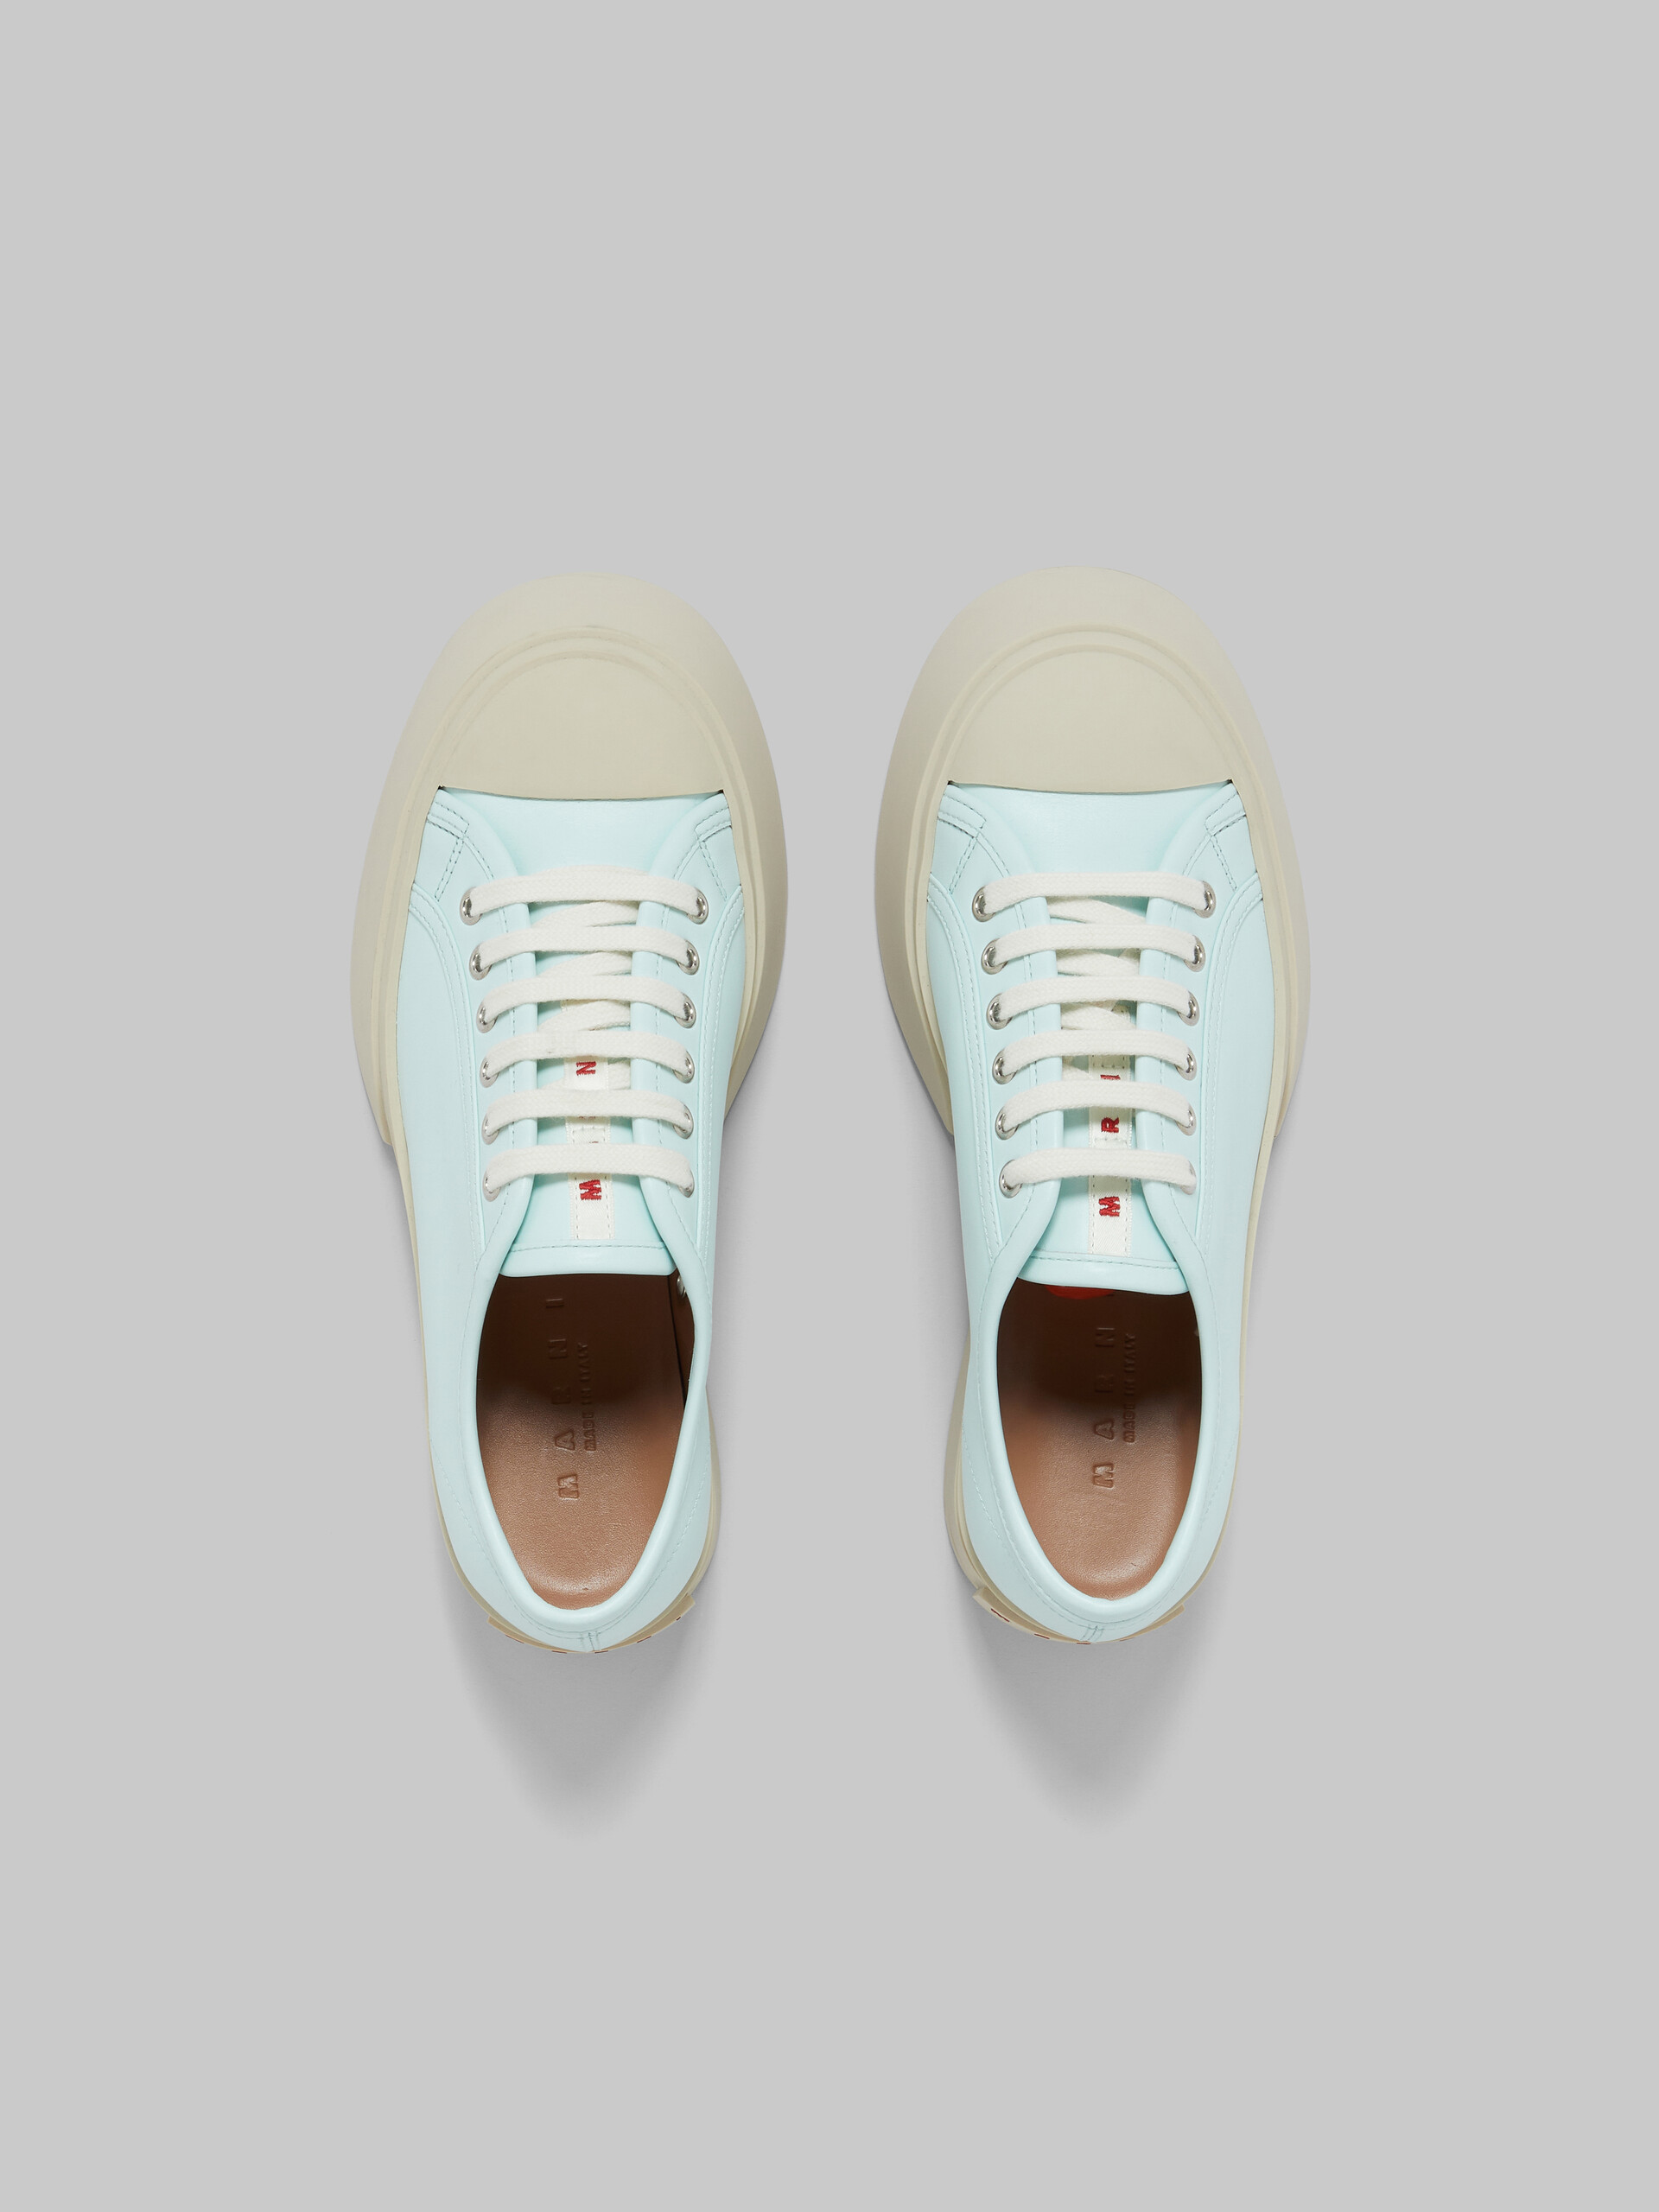 Sneakers à lacets Pablo en cuir nappa bleu clair - Sneakers - Image 4